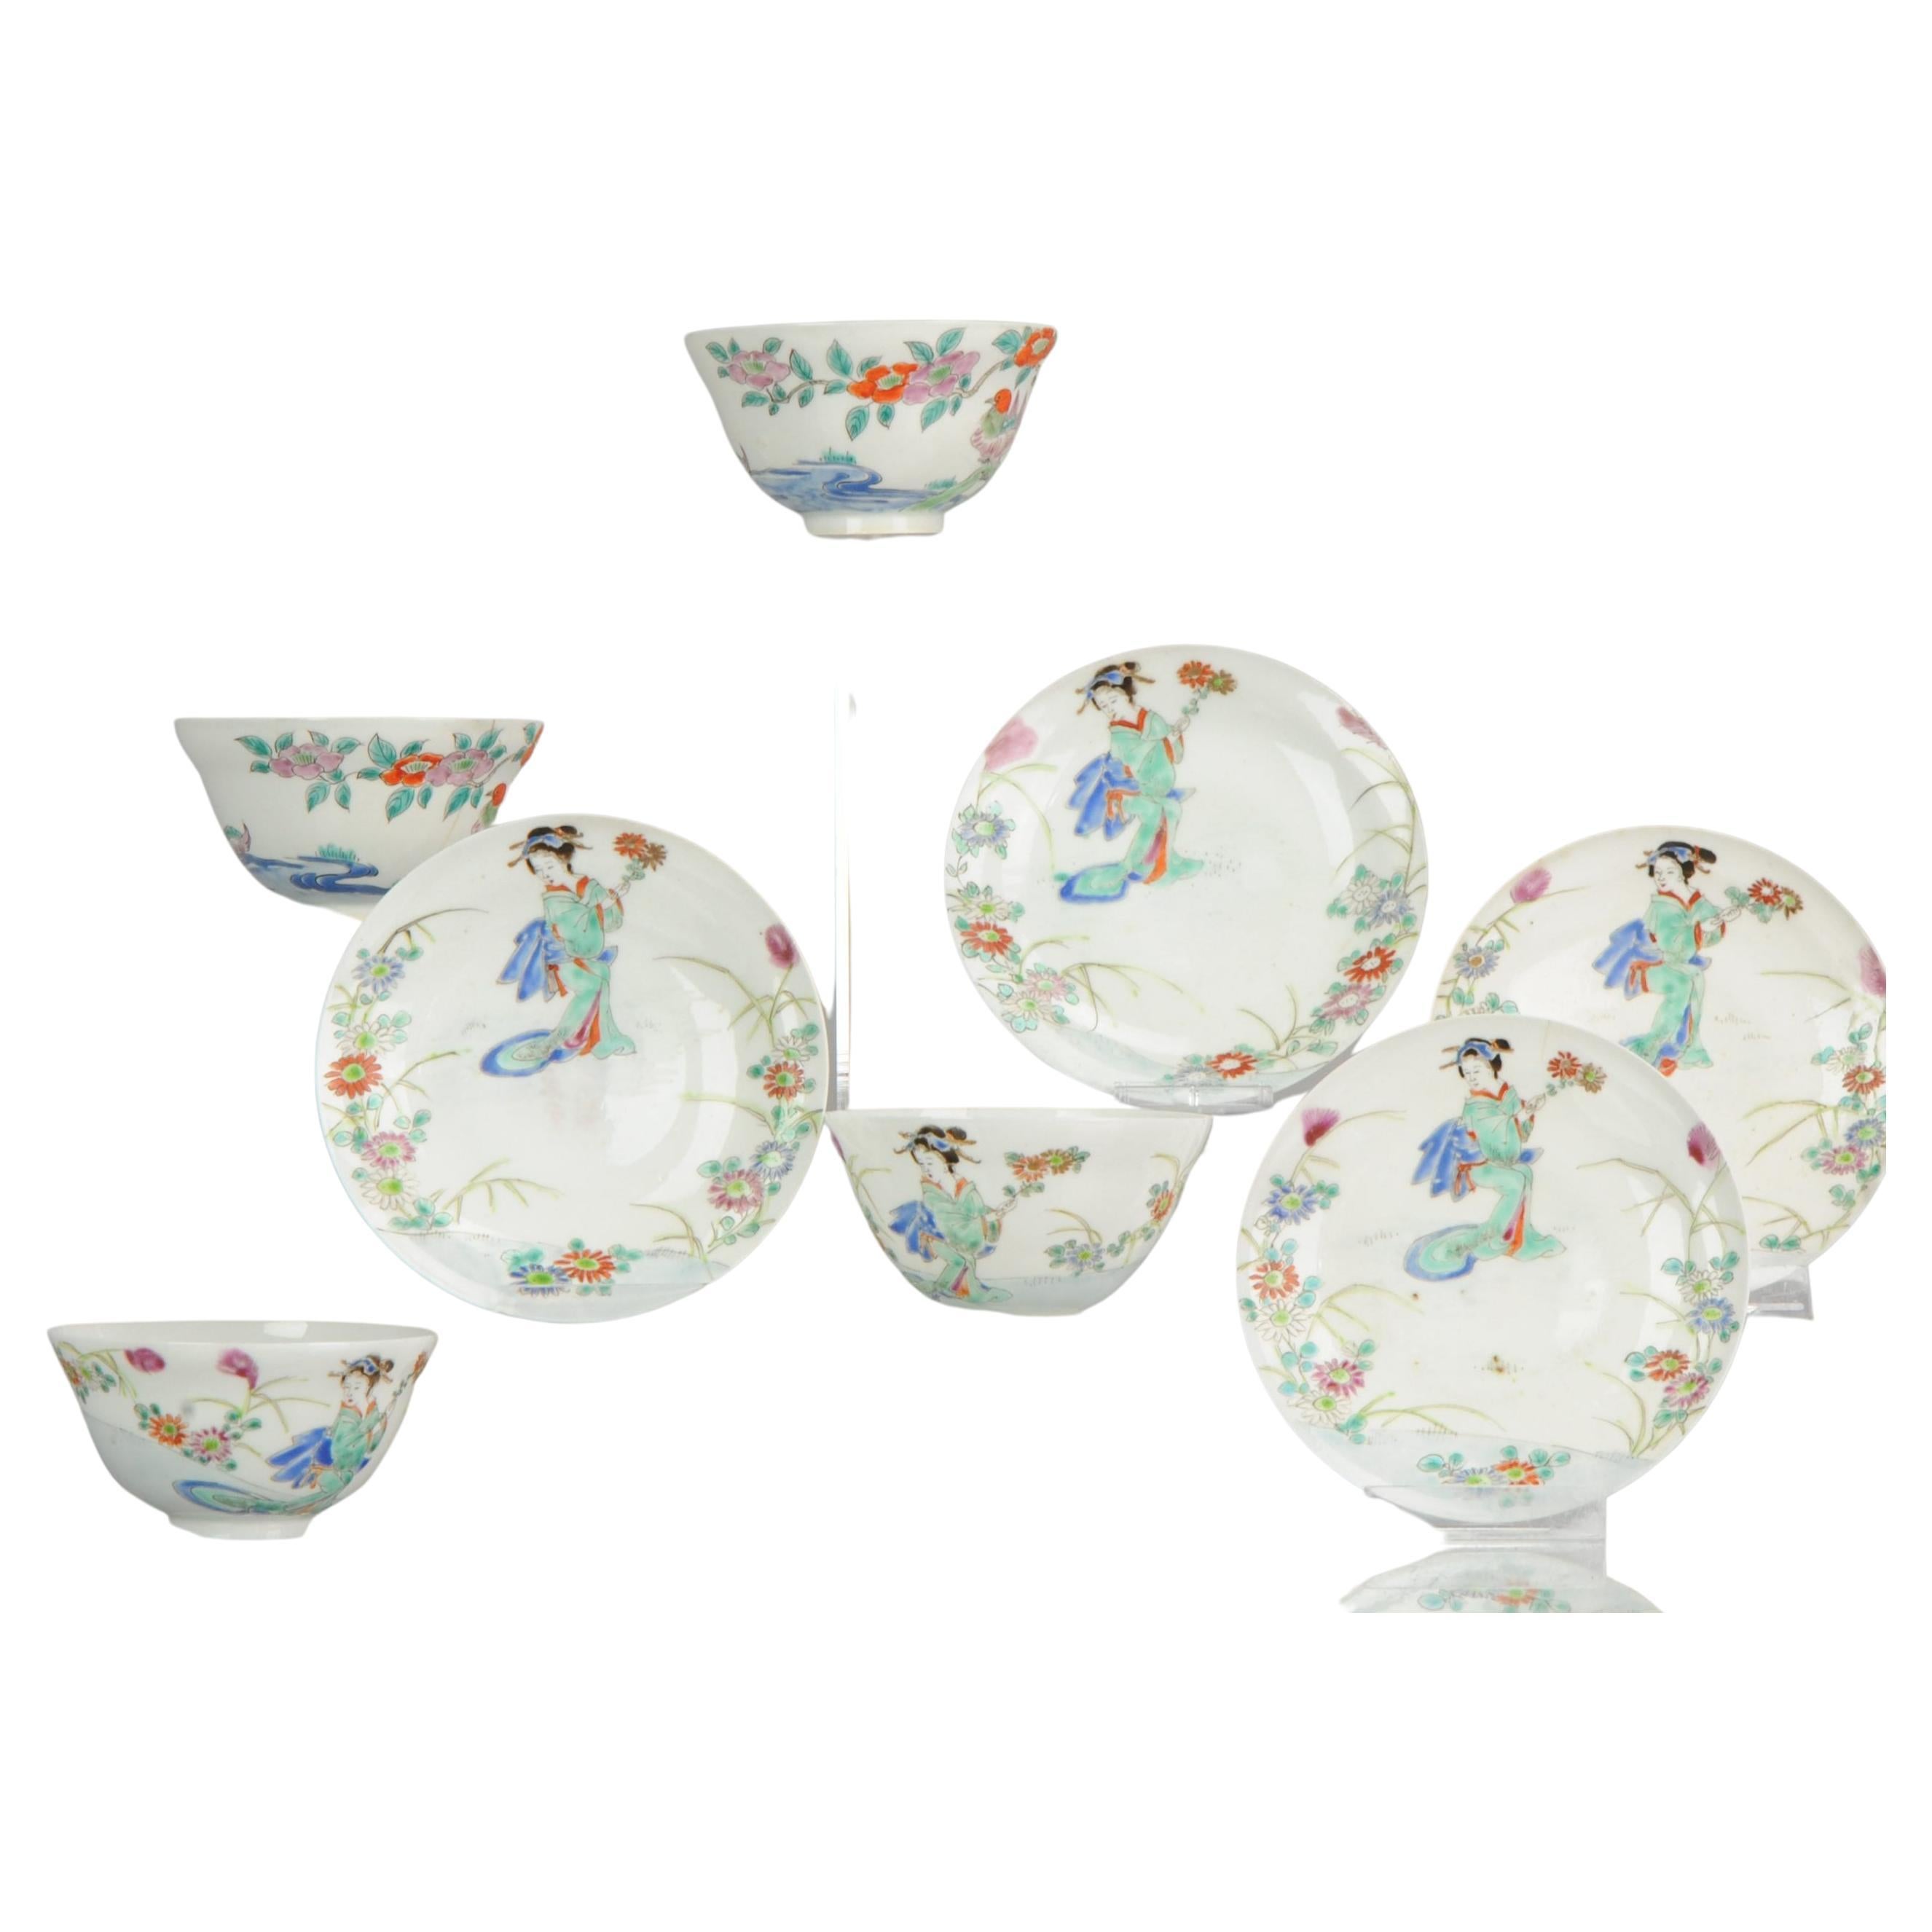 Ensemble de 4 bols à thé Chawan en porcelaine coquille d'œuf de la période japonaise Meiji